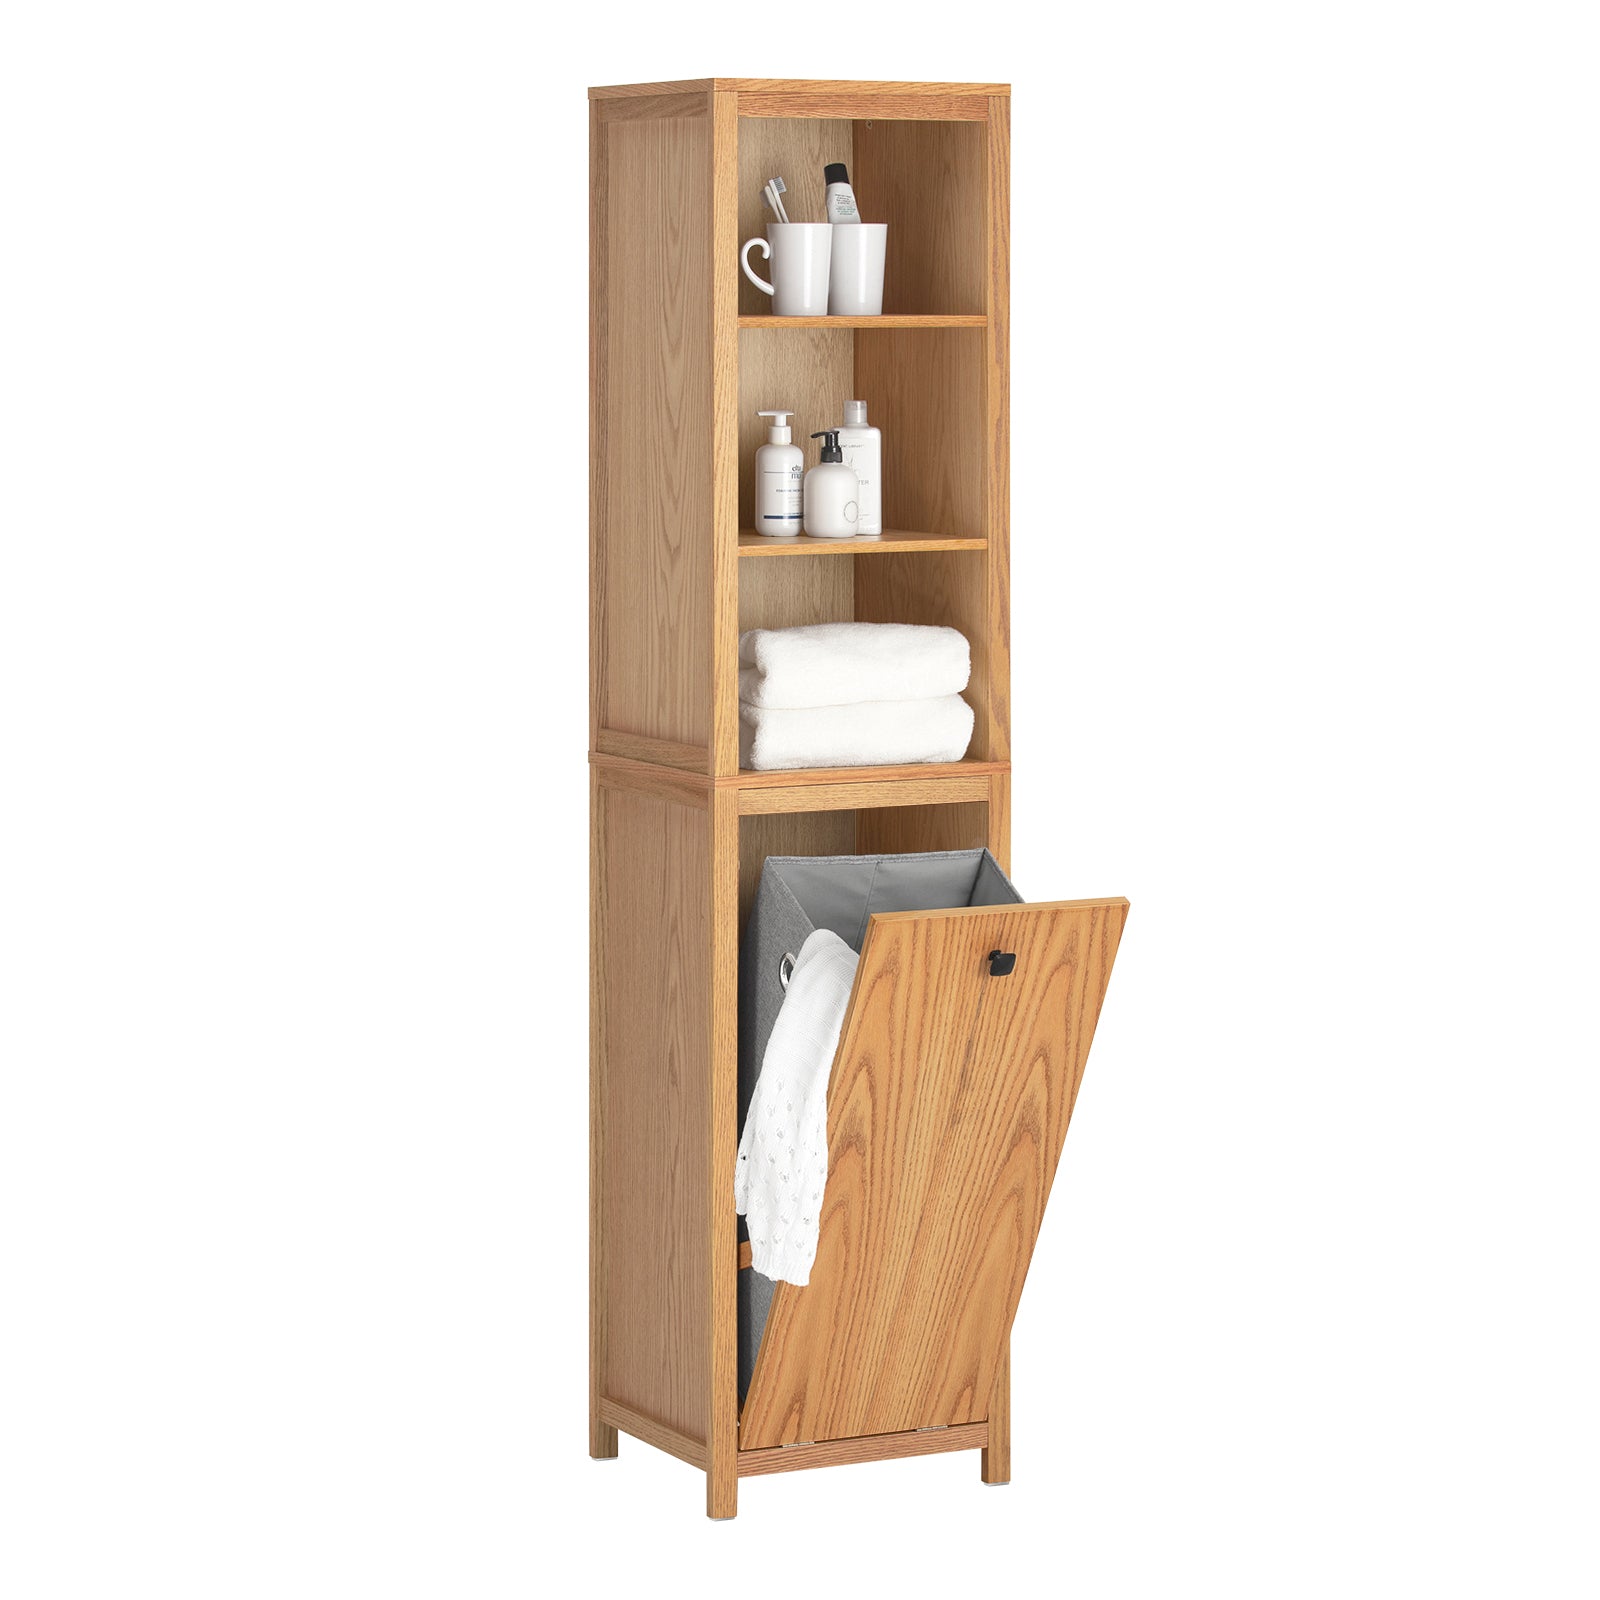 Muebles Erdaris - Mueble de madera para la ropa sucia Un